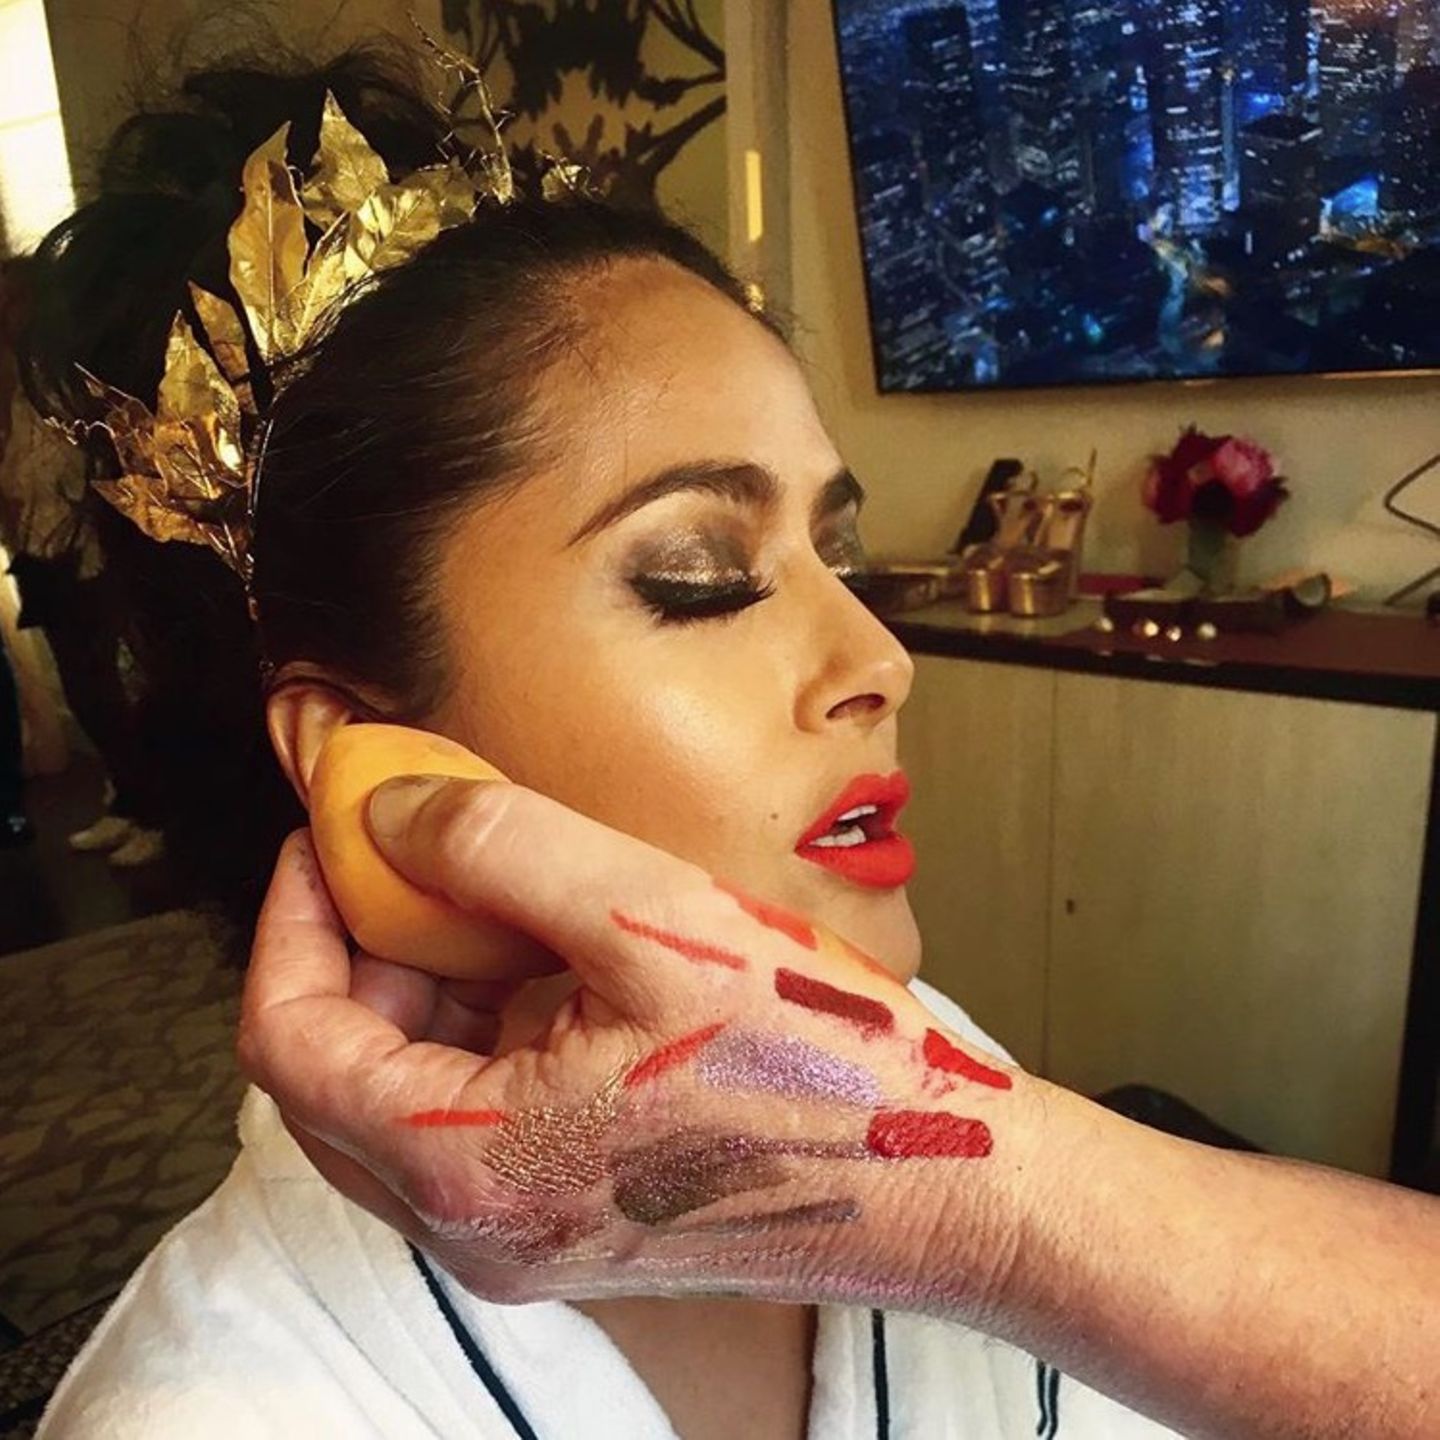 Auf Instagram gibt Salma Hayek ihren Fans exklusive Einblicke in ihr aufwendiges Make-up für die bevorstehende Met Gala.